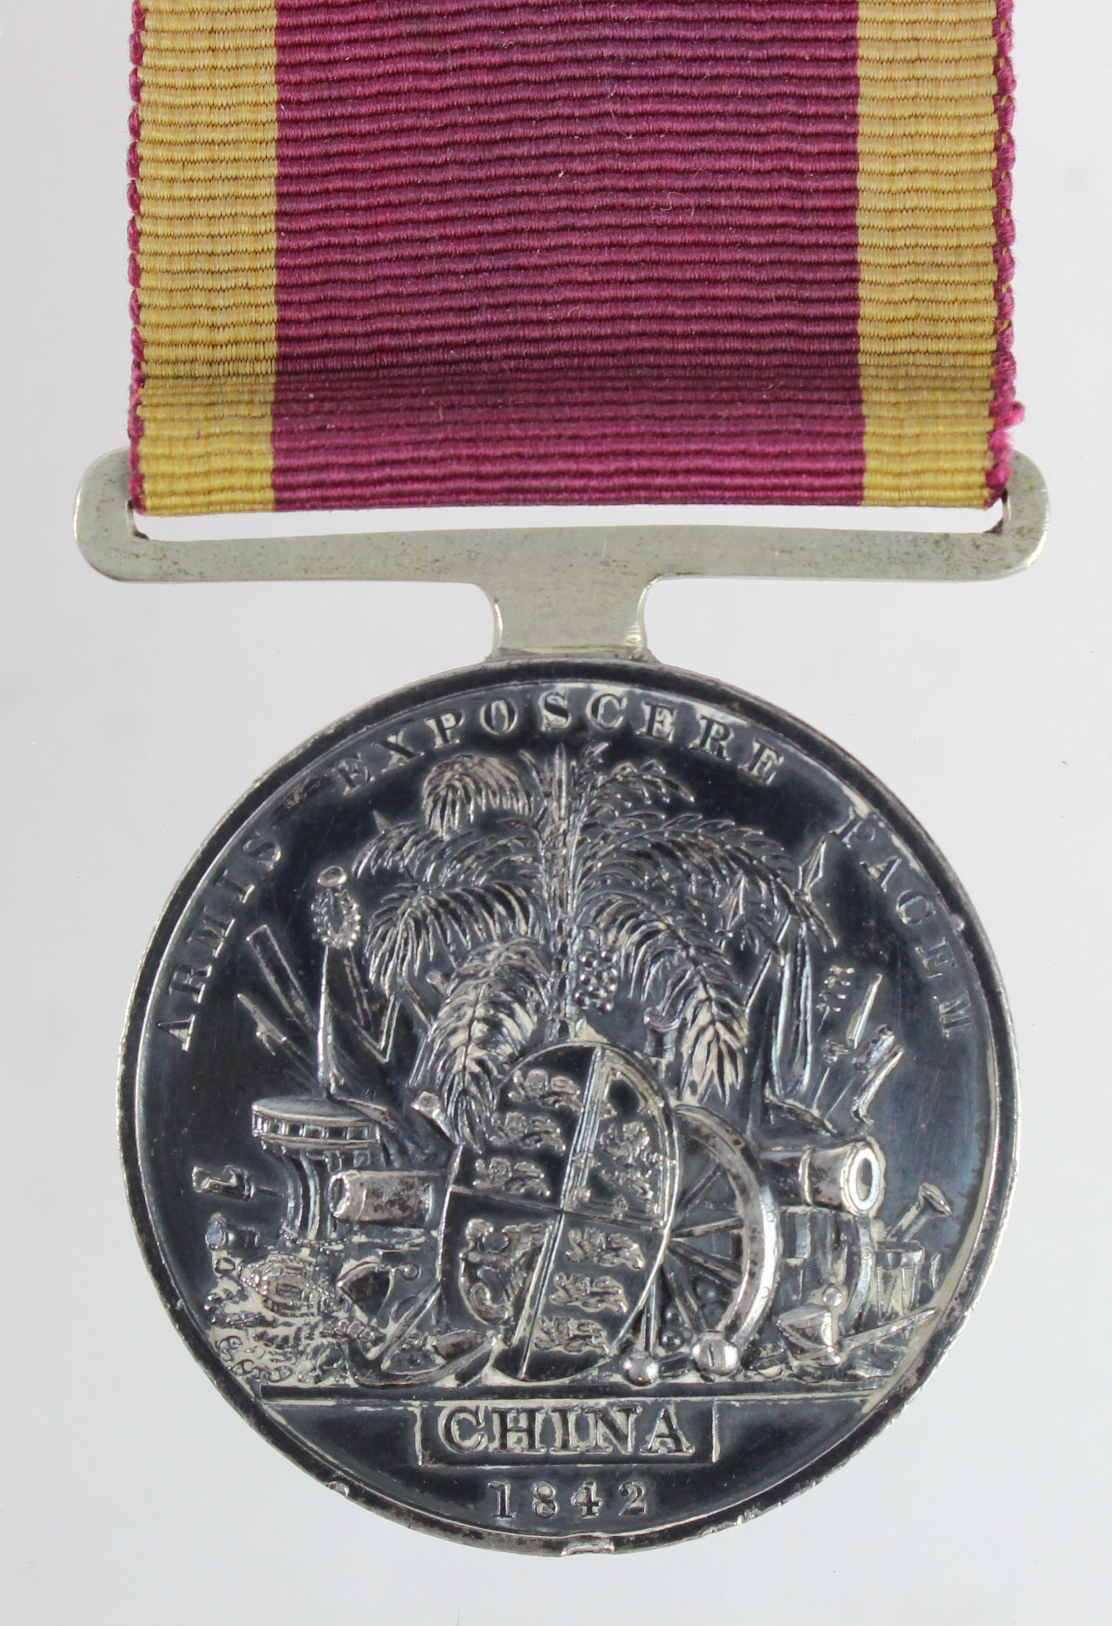 China War Medal 1842, First Opium War, impressed (William Deale HMS Alligator). - Image 2 of 2